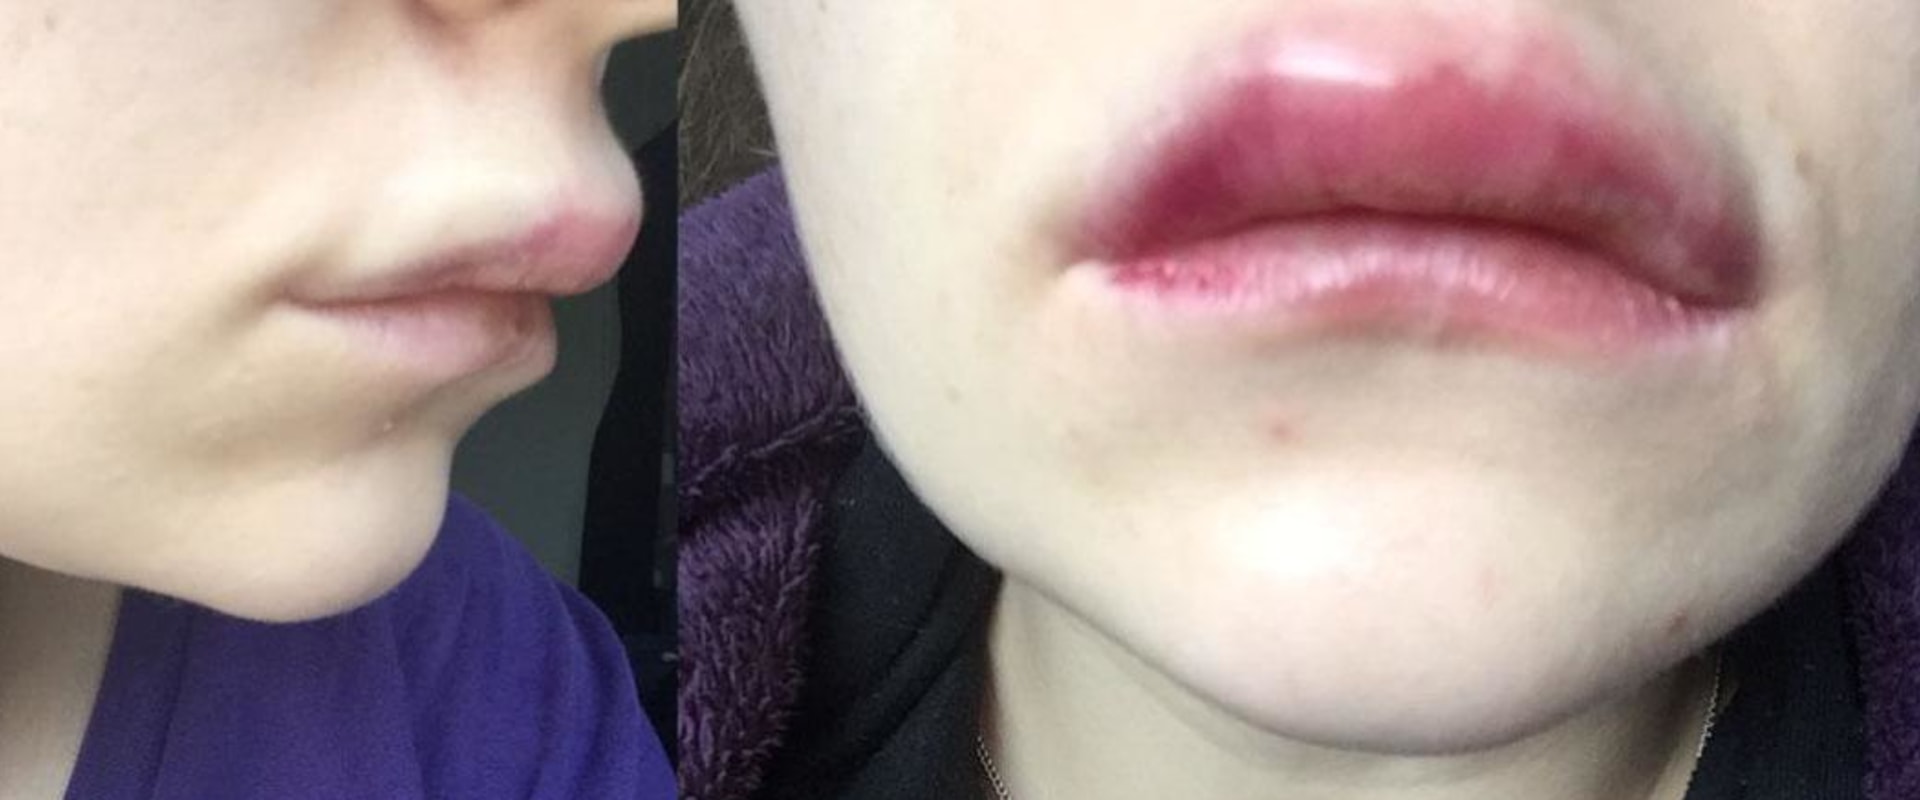 Cuánto tarda en desinflamar el aumento de labios?